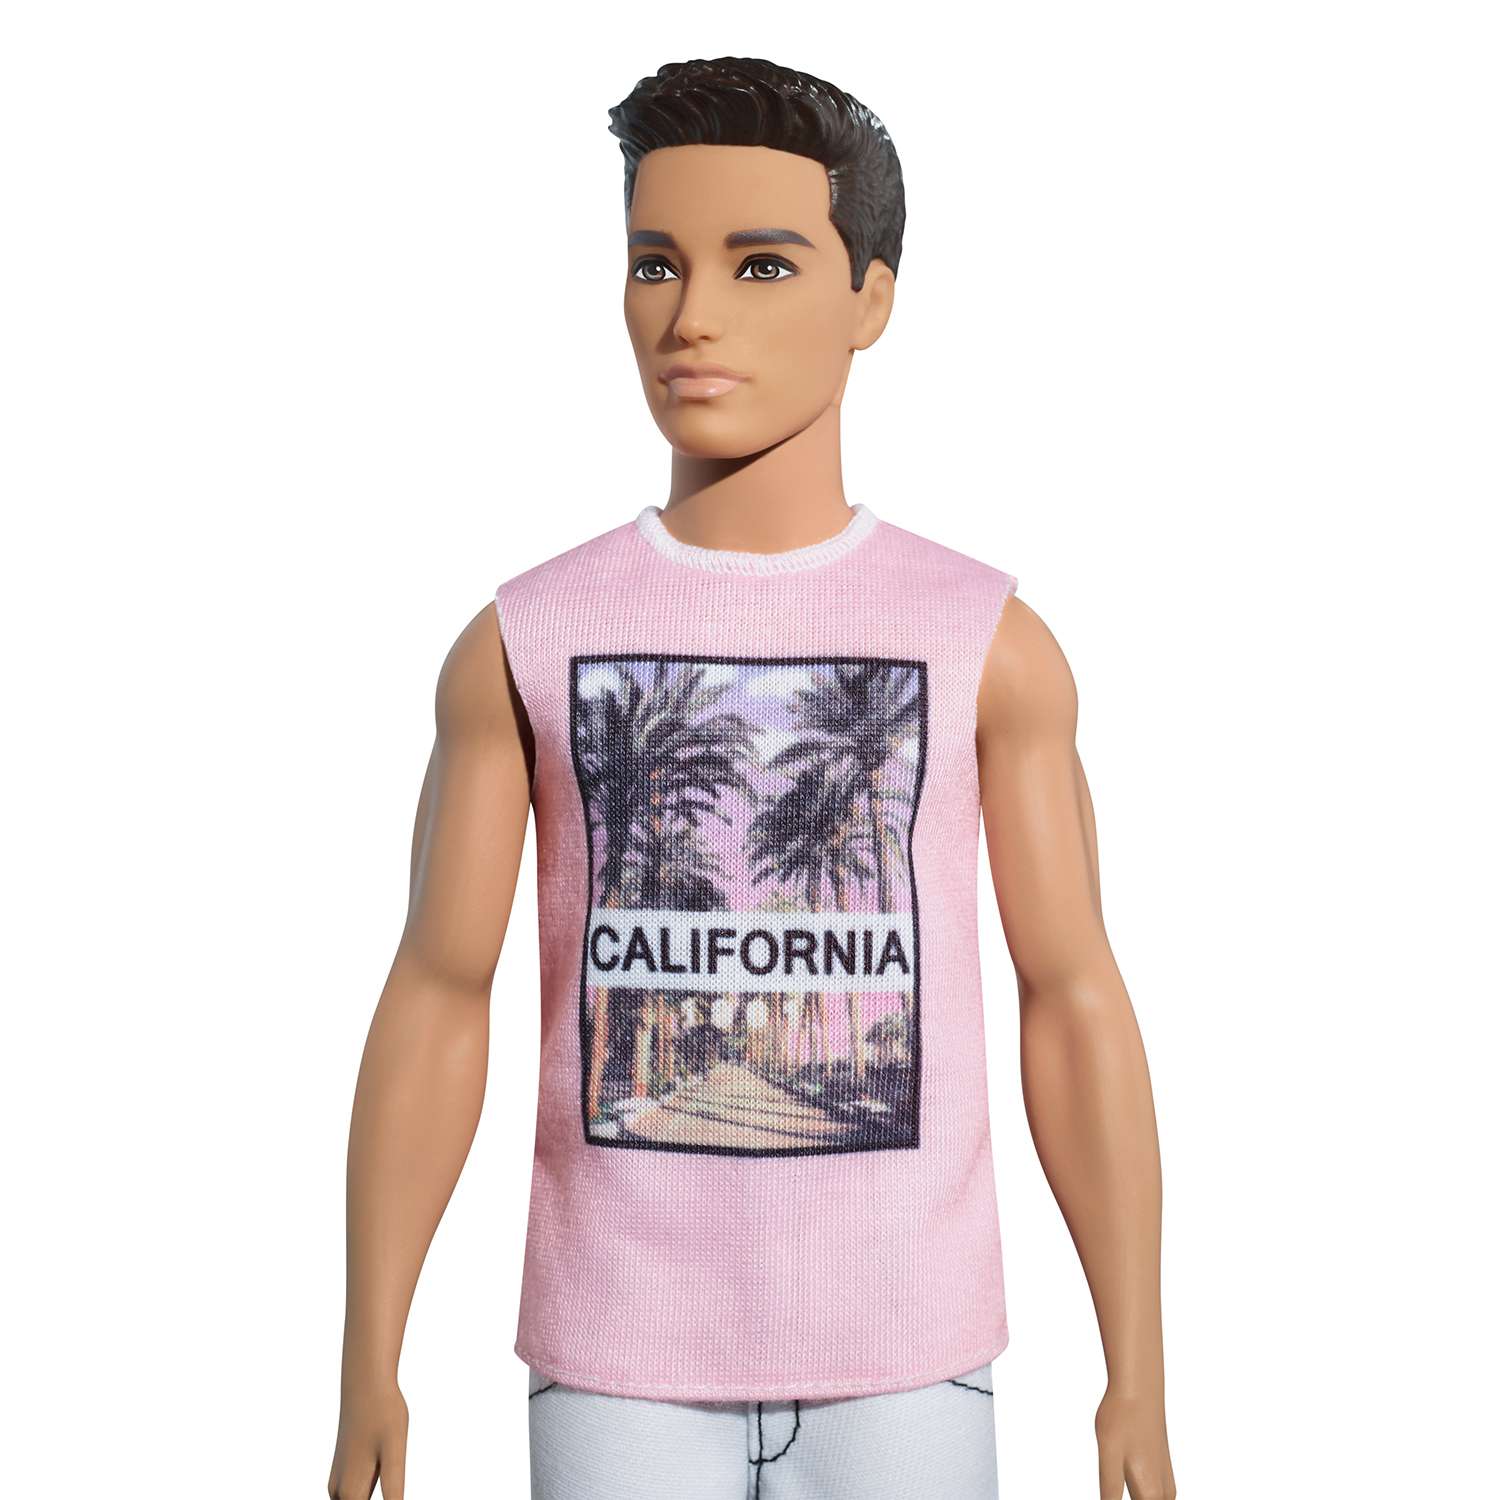 Кукла Barbie Кен Крутая калифорния FJF75 DWK44 - фото 3